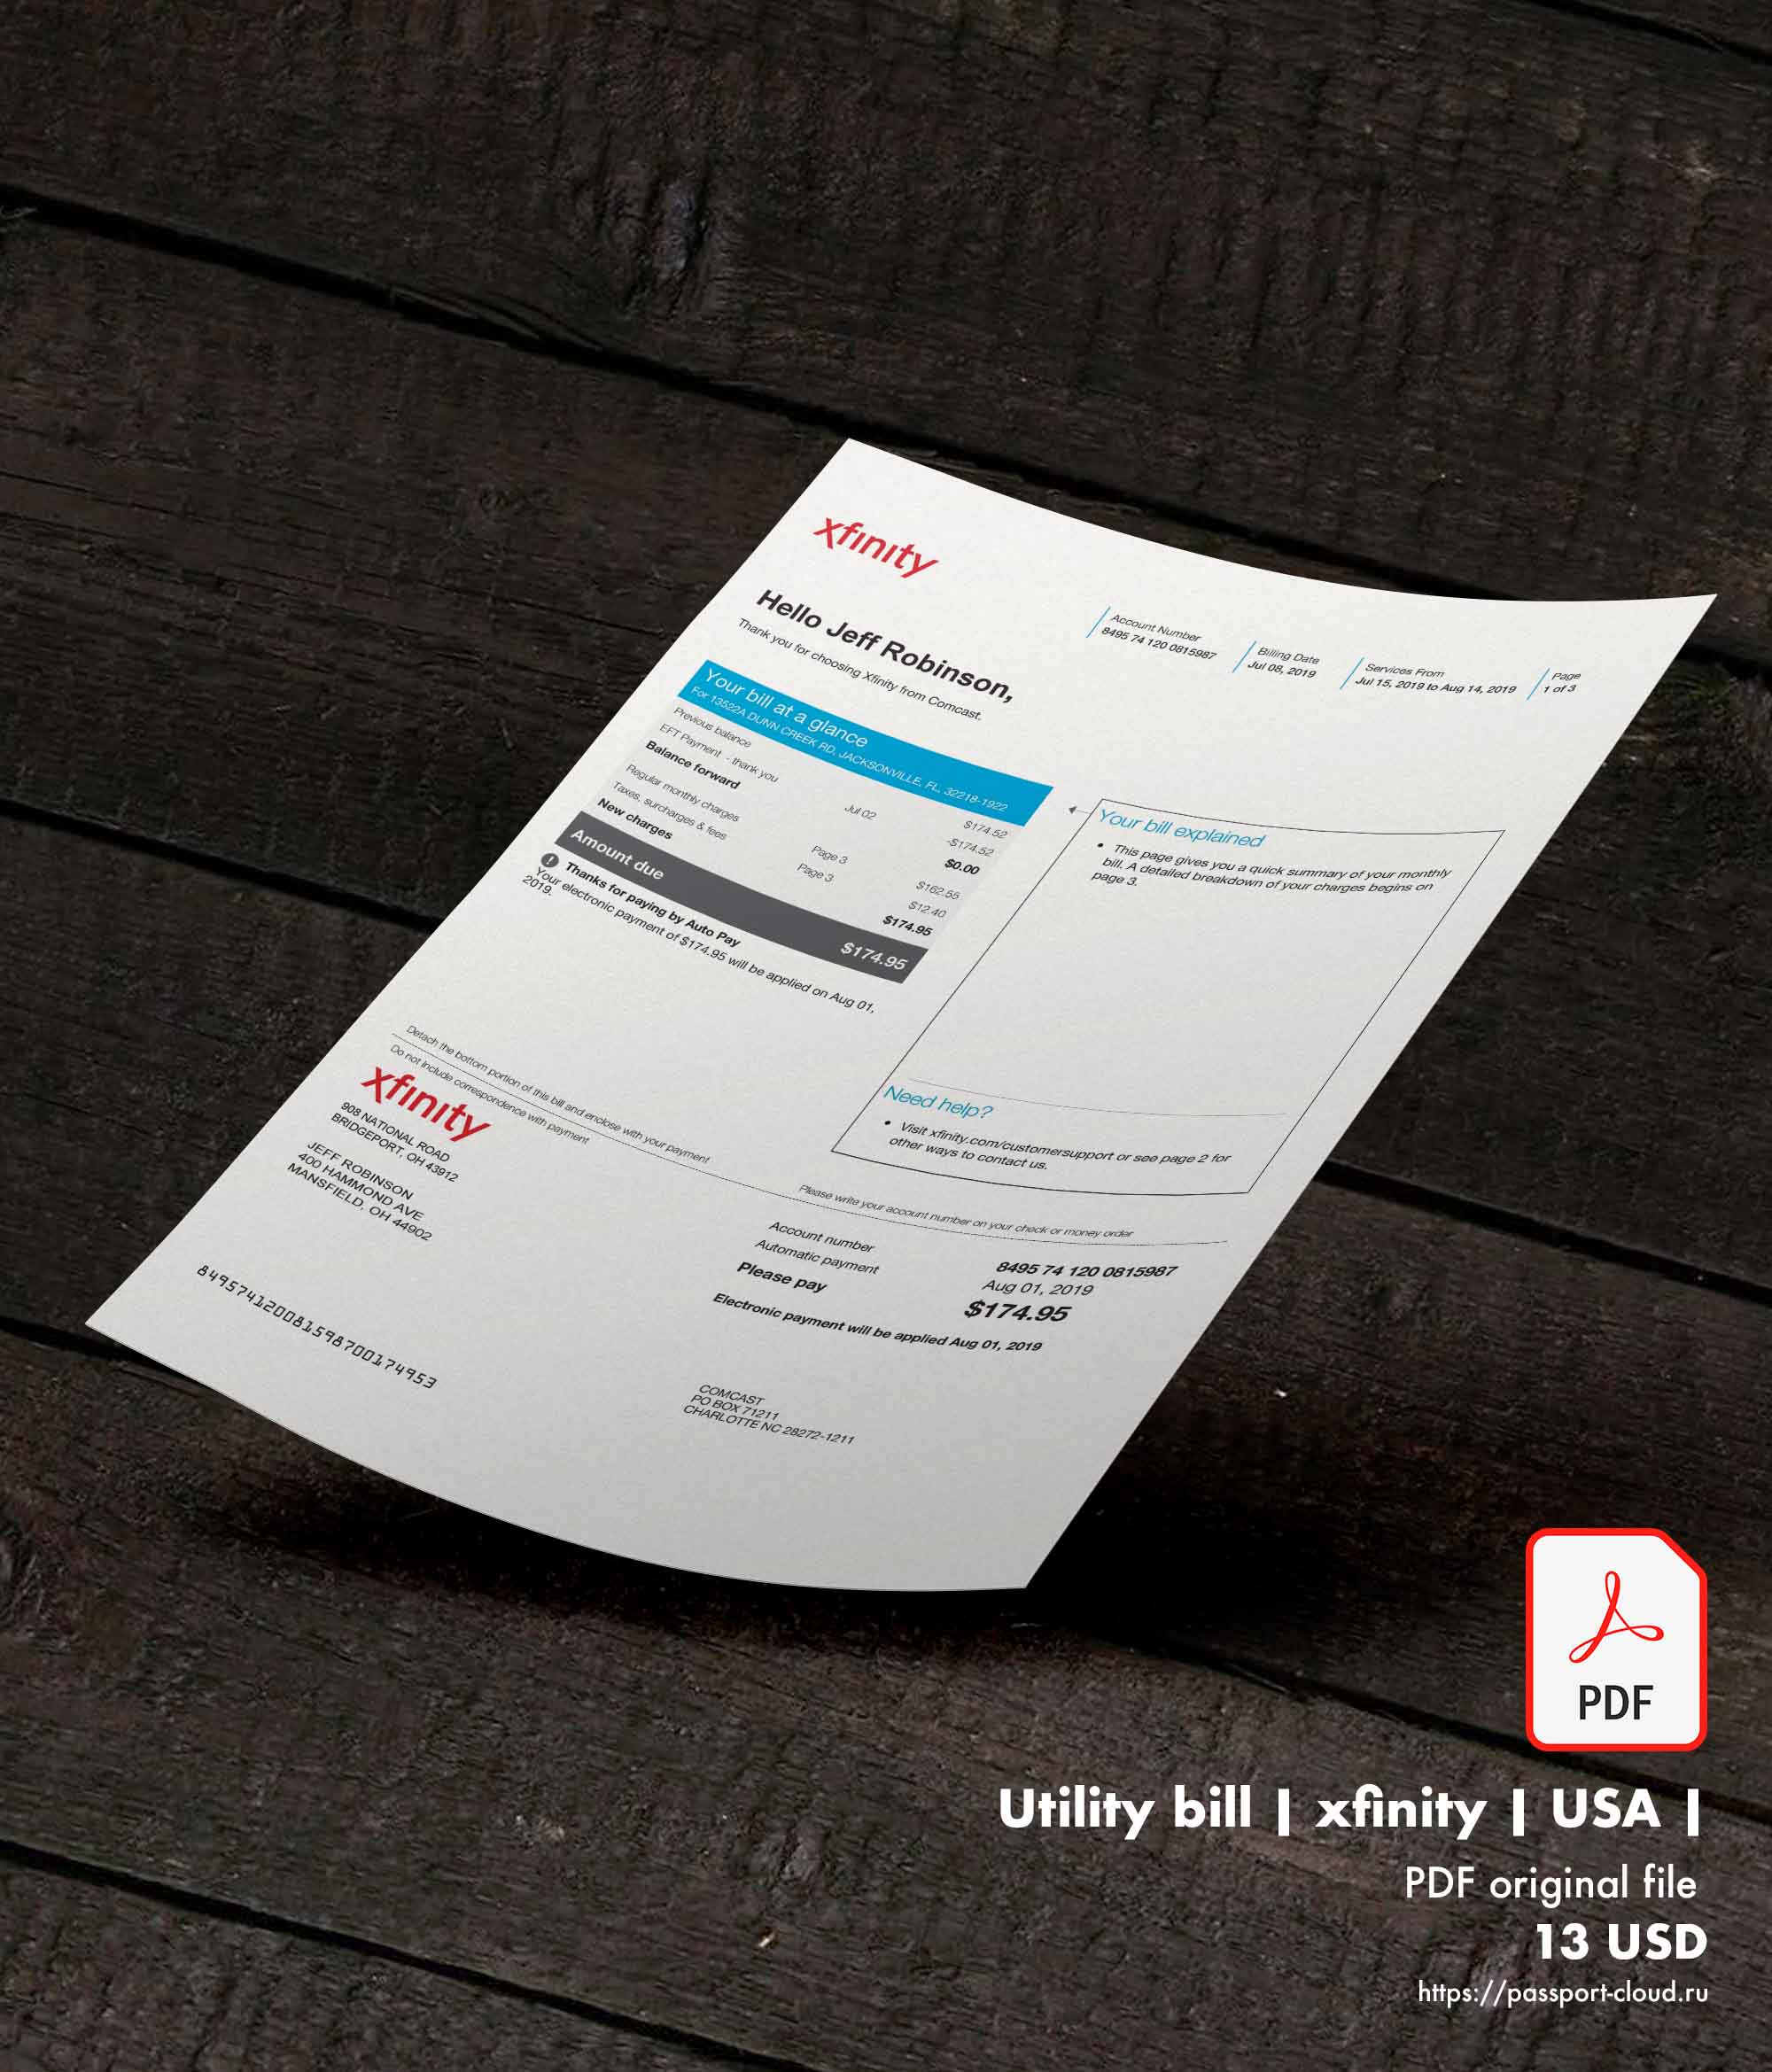 Utility bill | xfinity | USA | 1